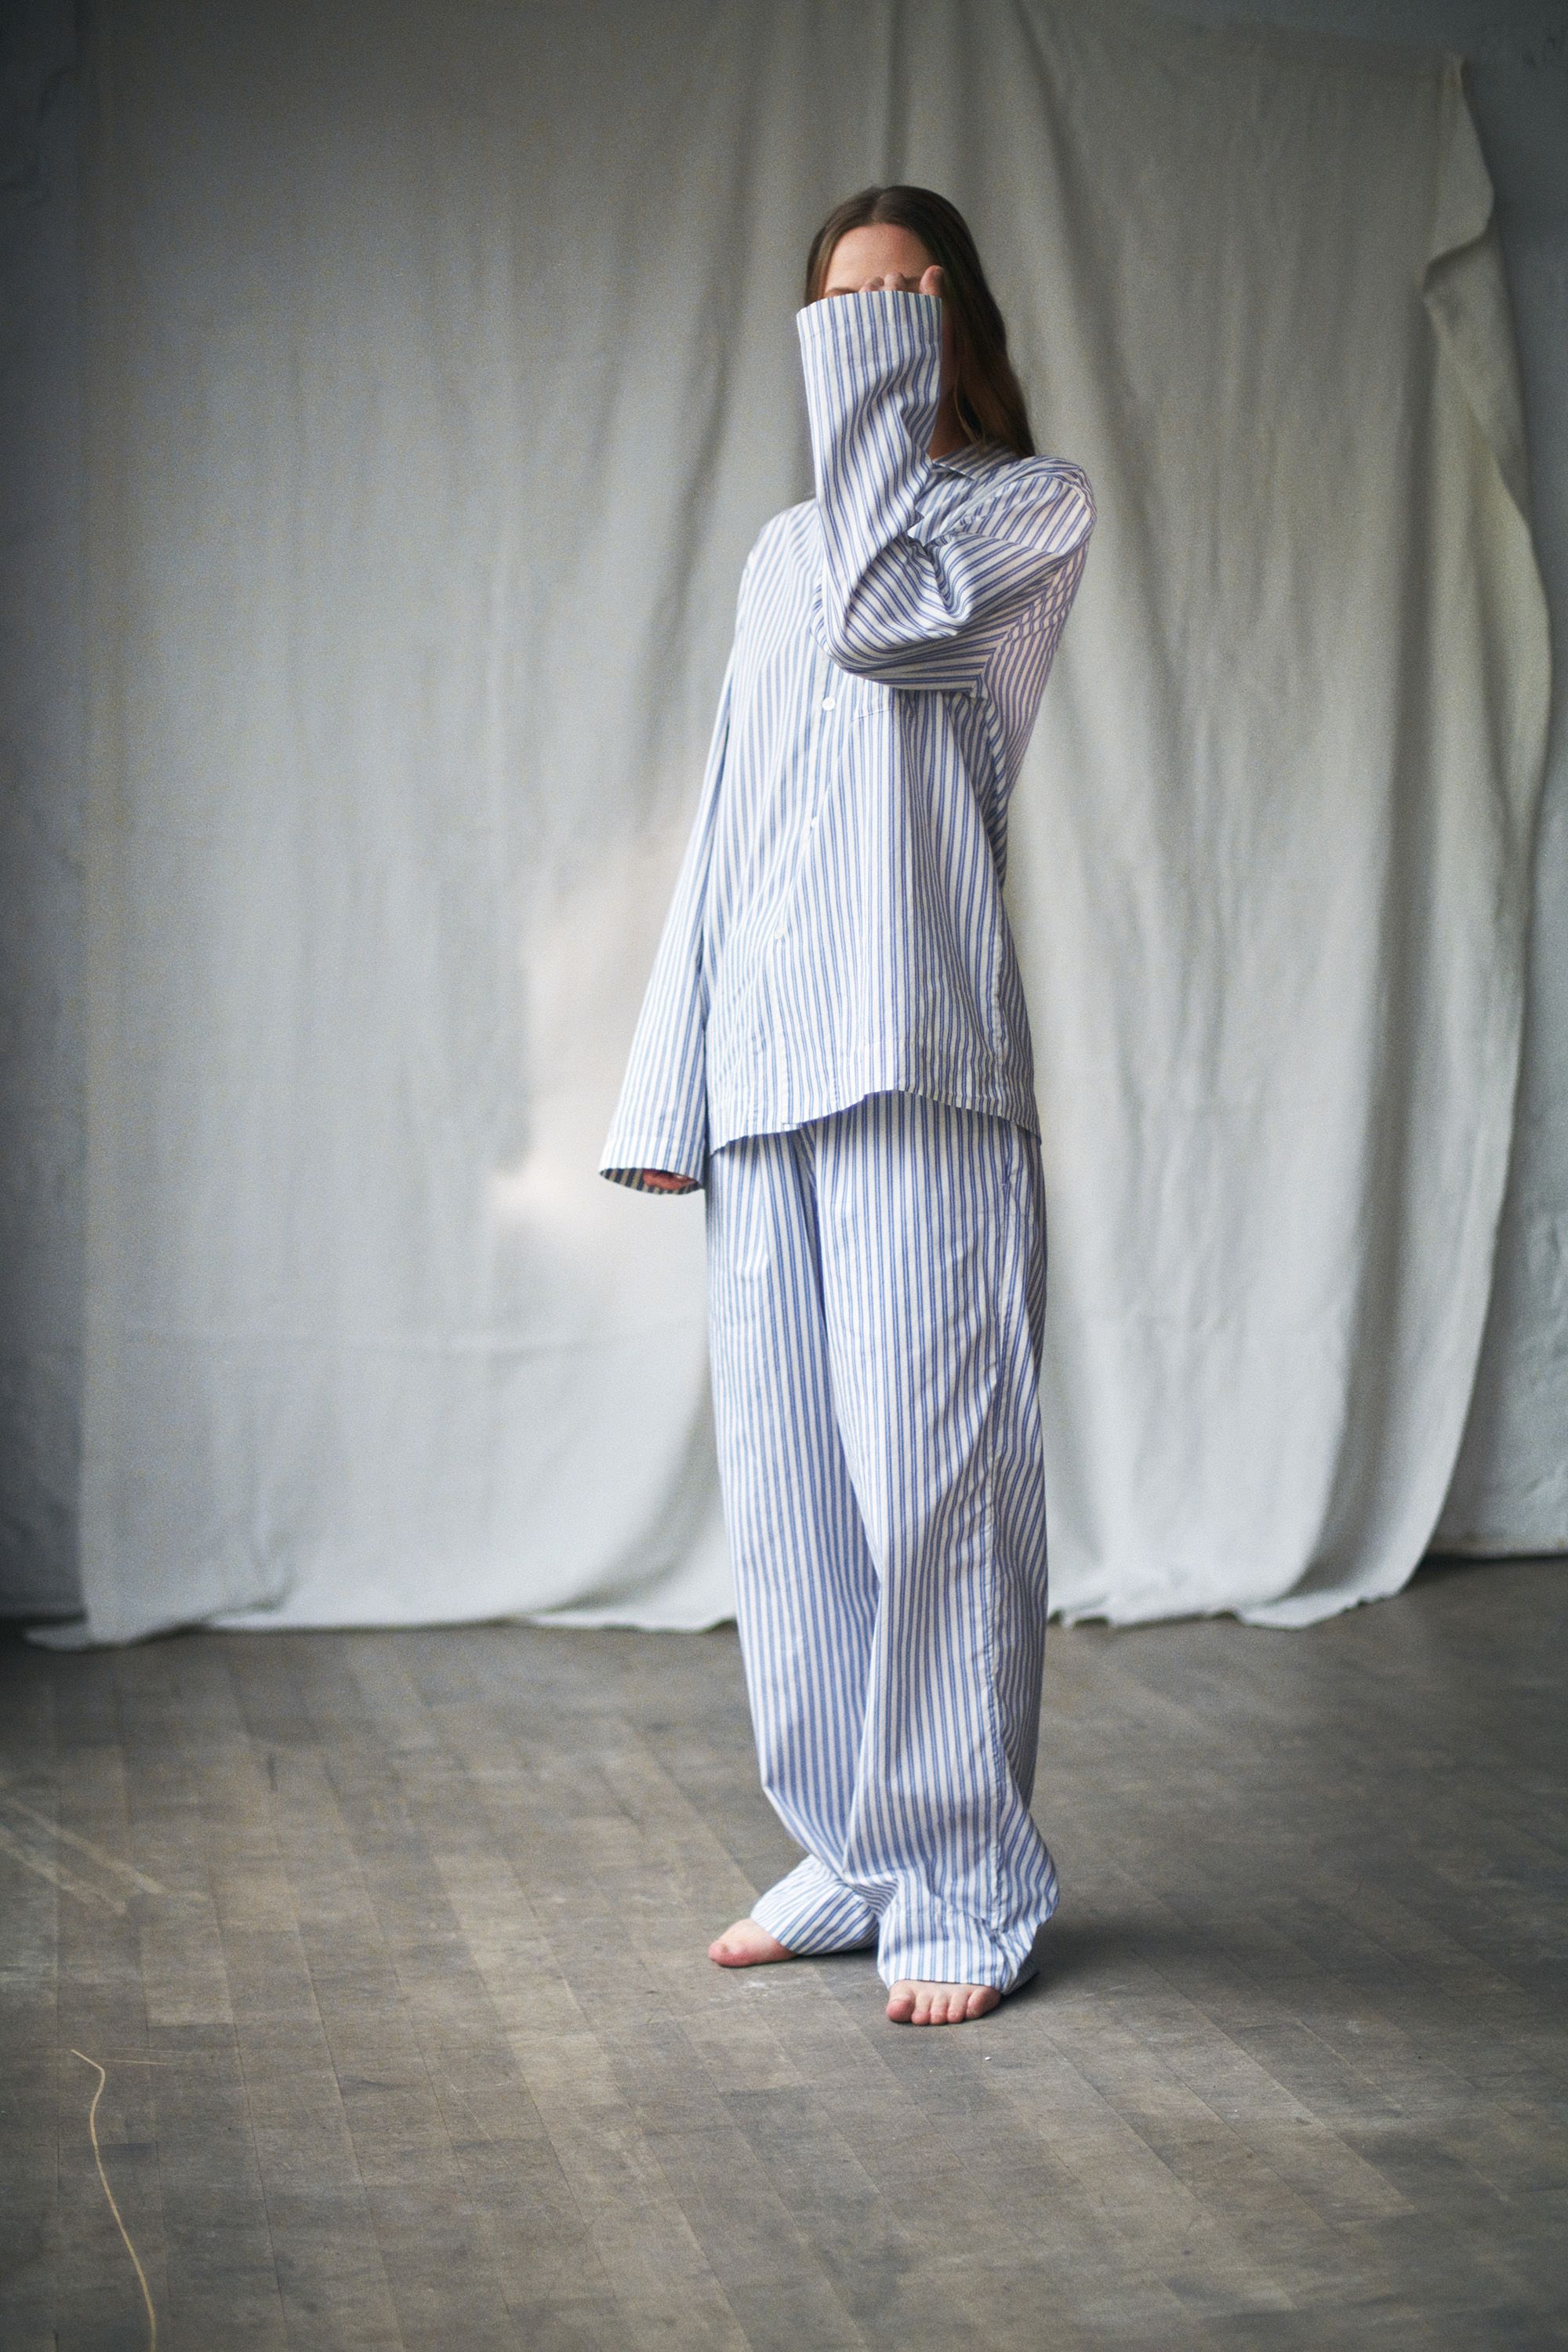 Best pyjama brands – our guide to stylish sleepwear